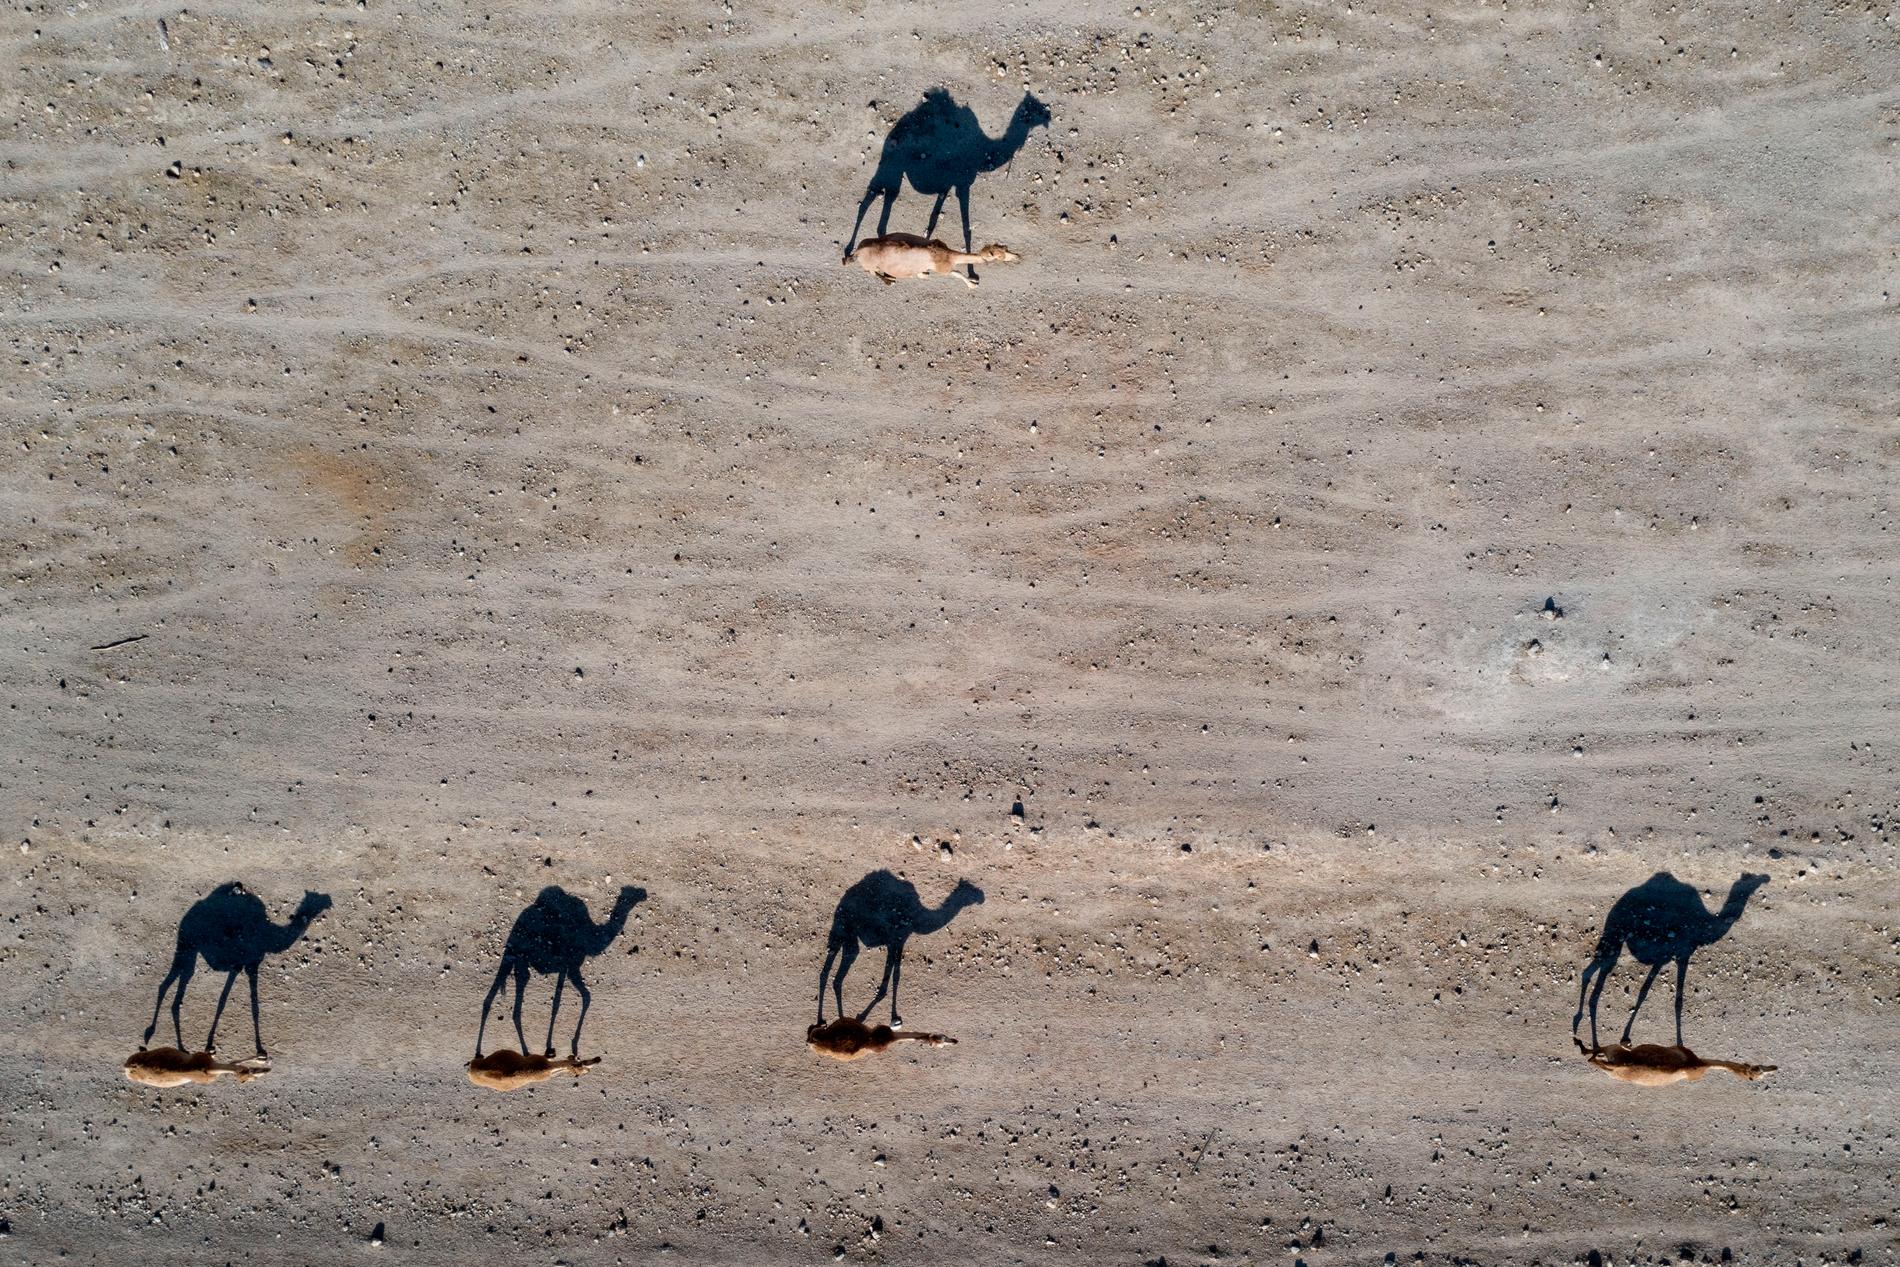 Drygt ett ton cannabis som hade lastats på kameler har beslagtagits i södra Marocko. De knarklastade djuren påträffades i regionen Errachidia. Arkivbild.